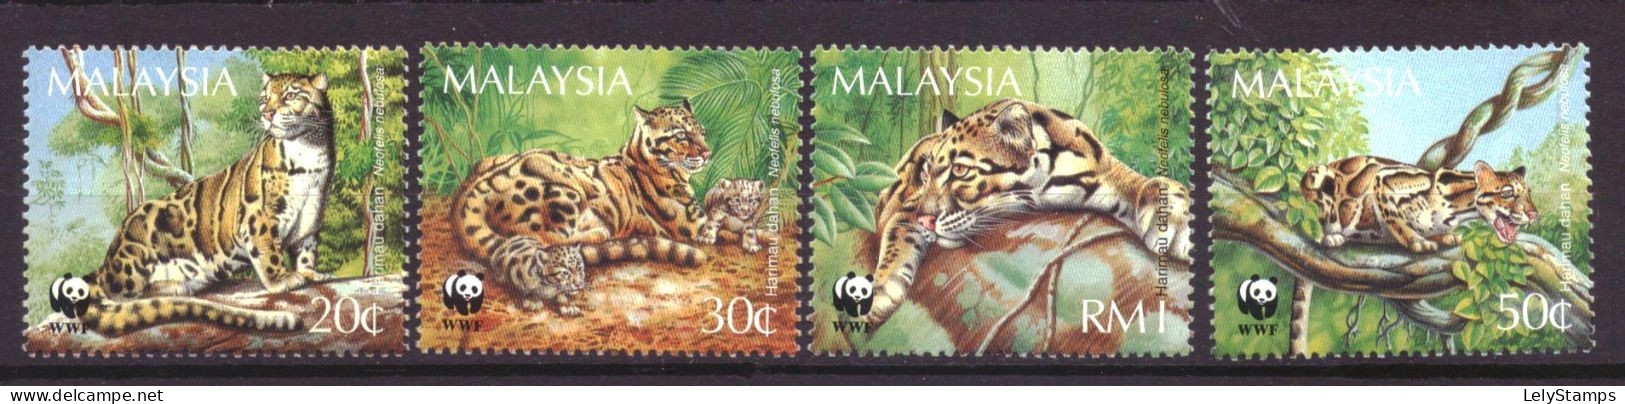 Maleisie / Malaysia 557 T/m 560 MNH ** WWF WNF Animals Nature (1995) - Malaysia (1964-...)